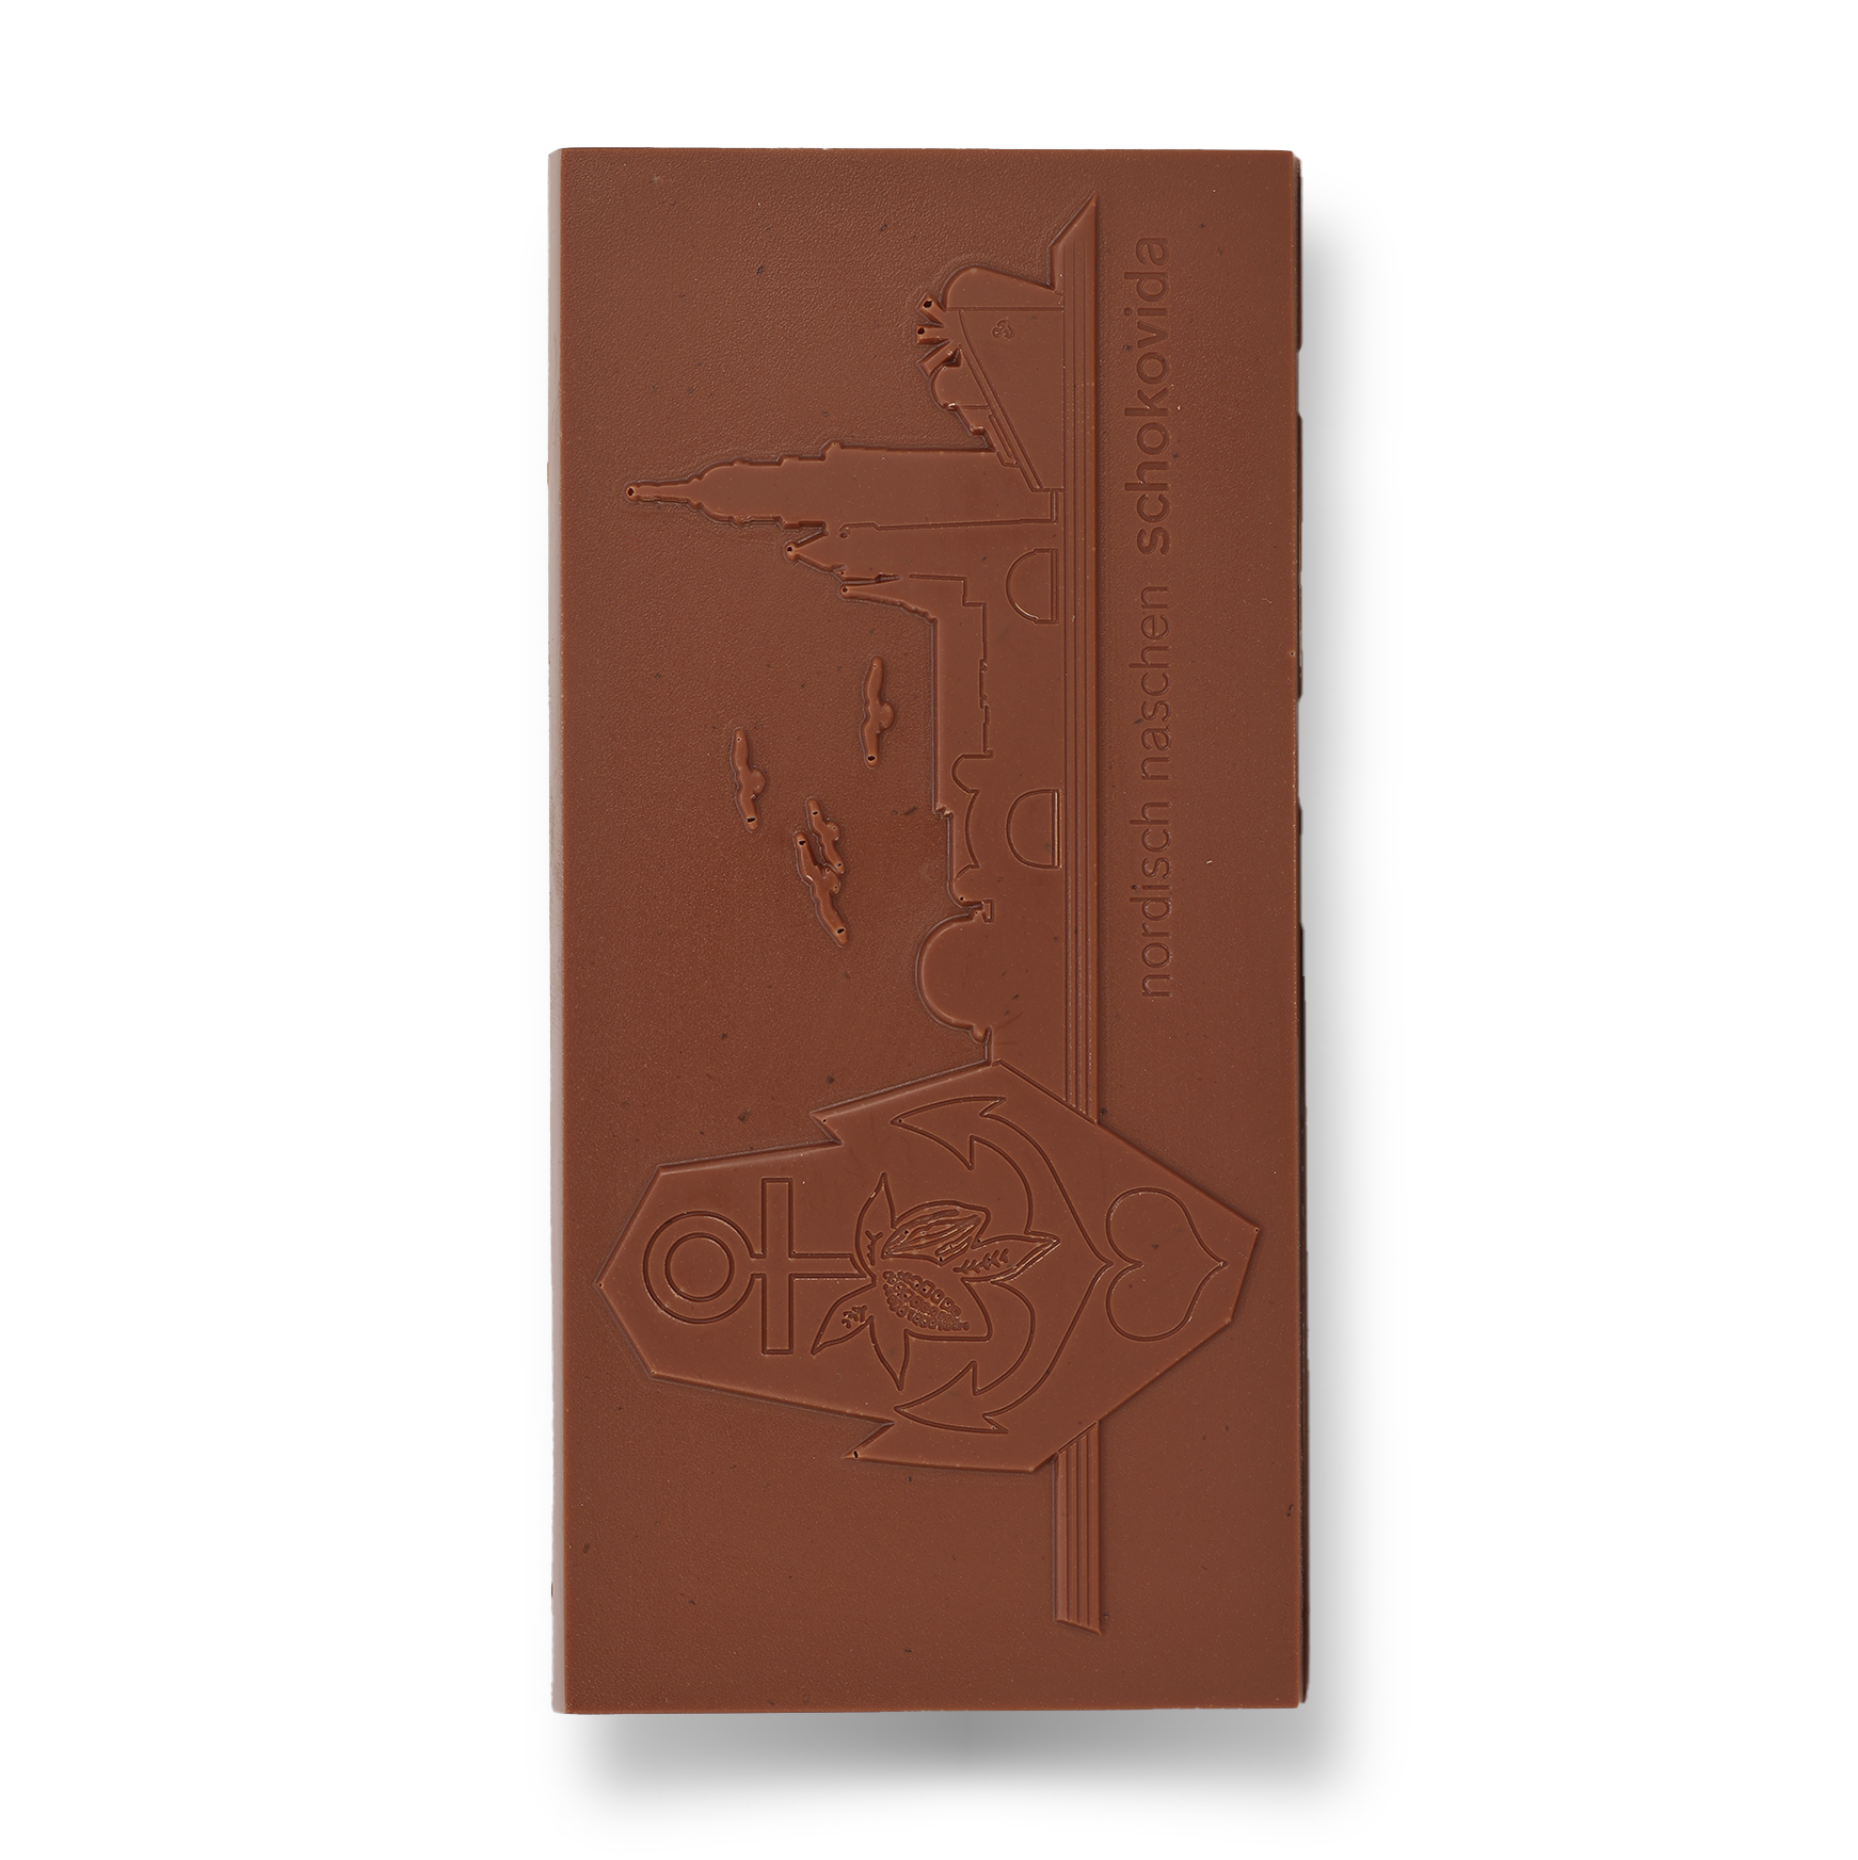 Schokolade für Seute Deerns – Vollmilch, 100g